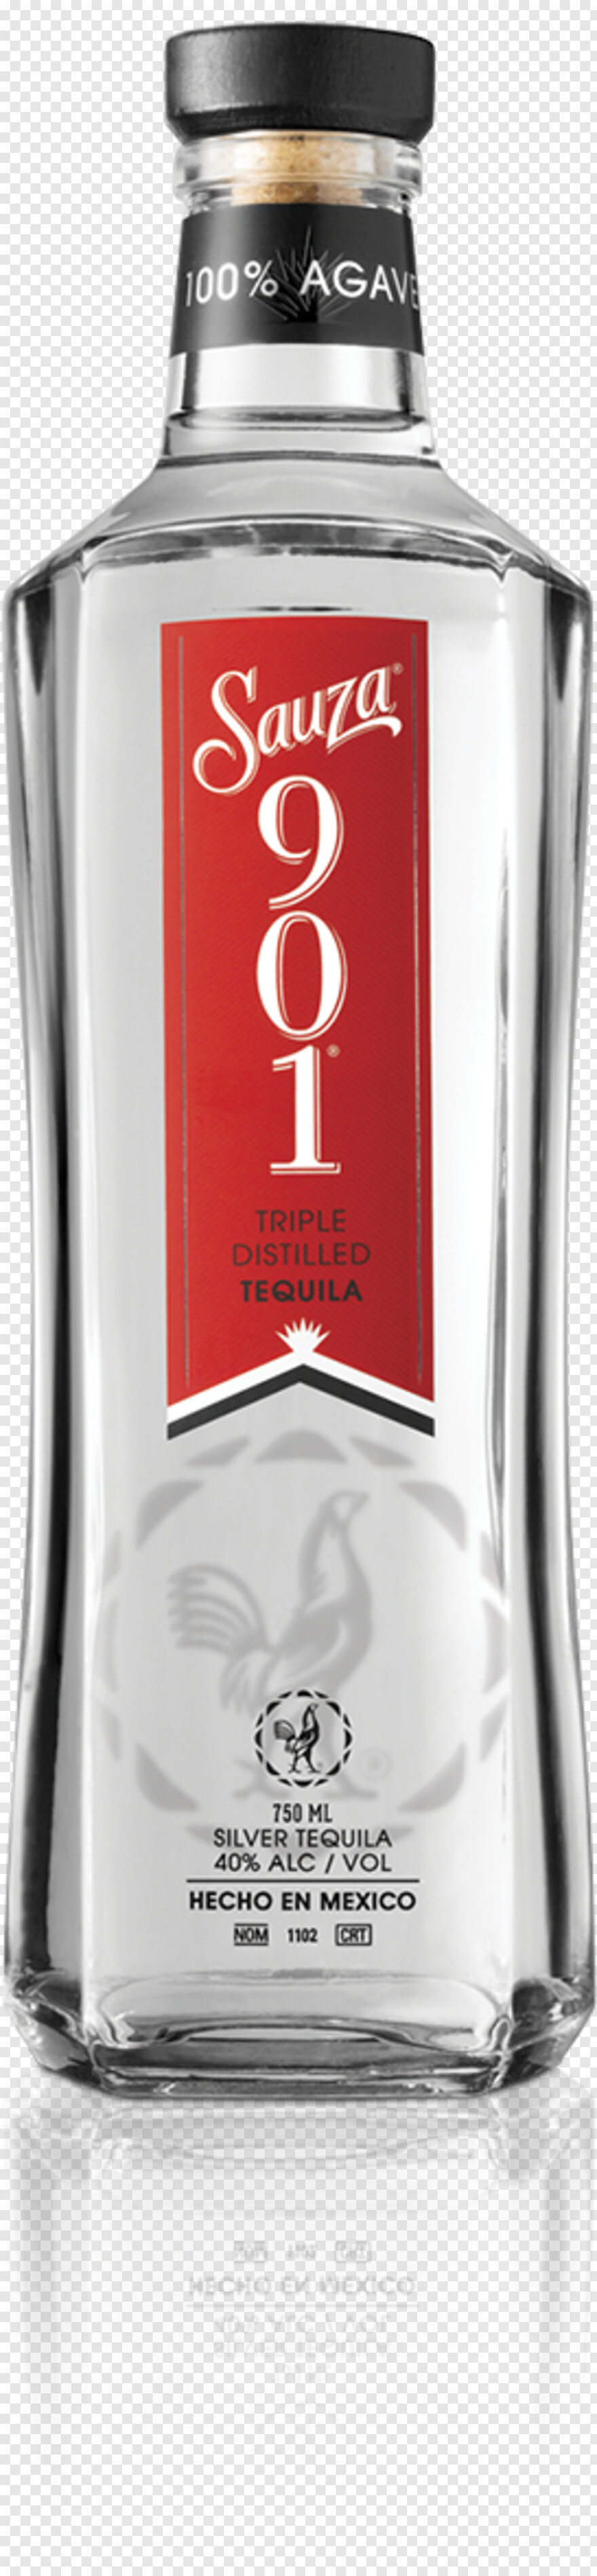 tequila-bottle # 376638